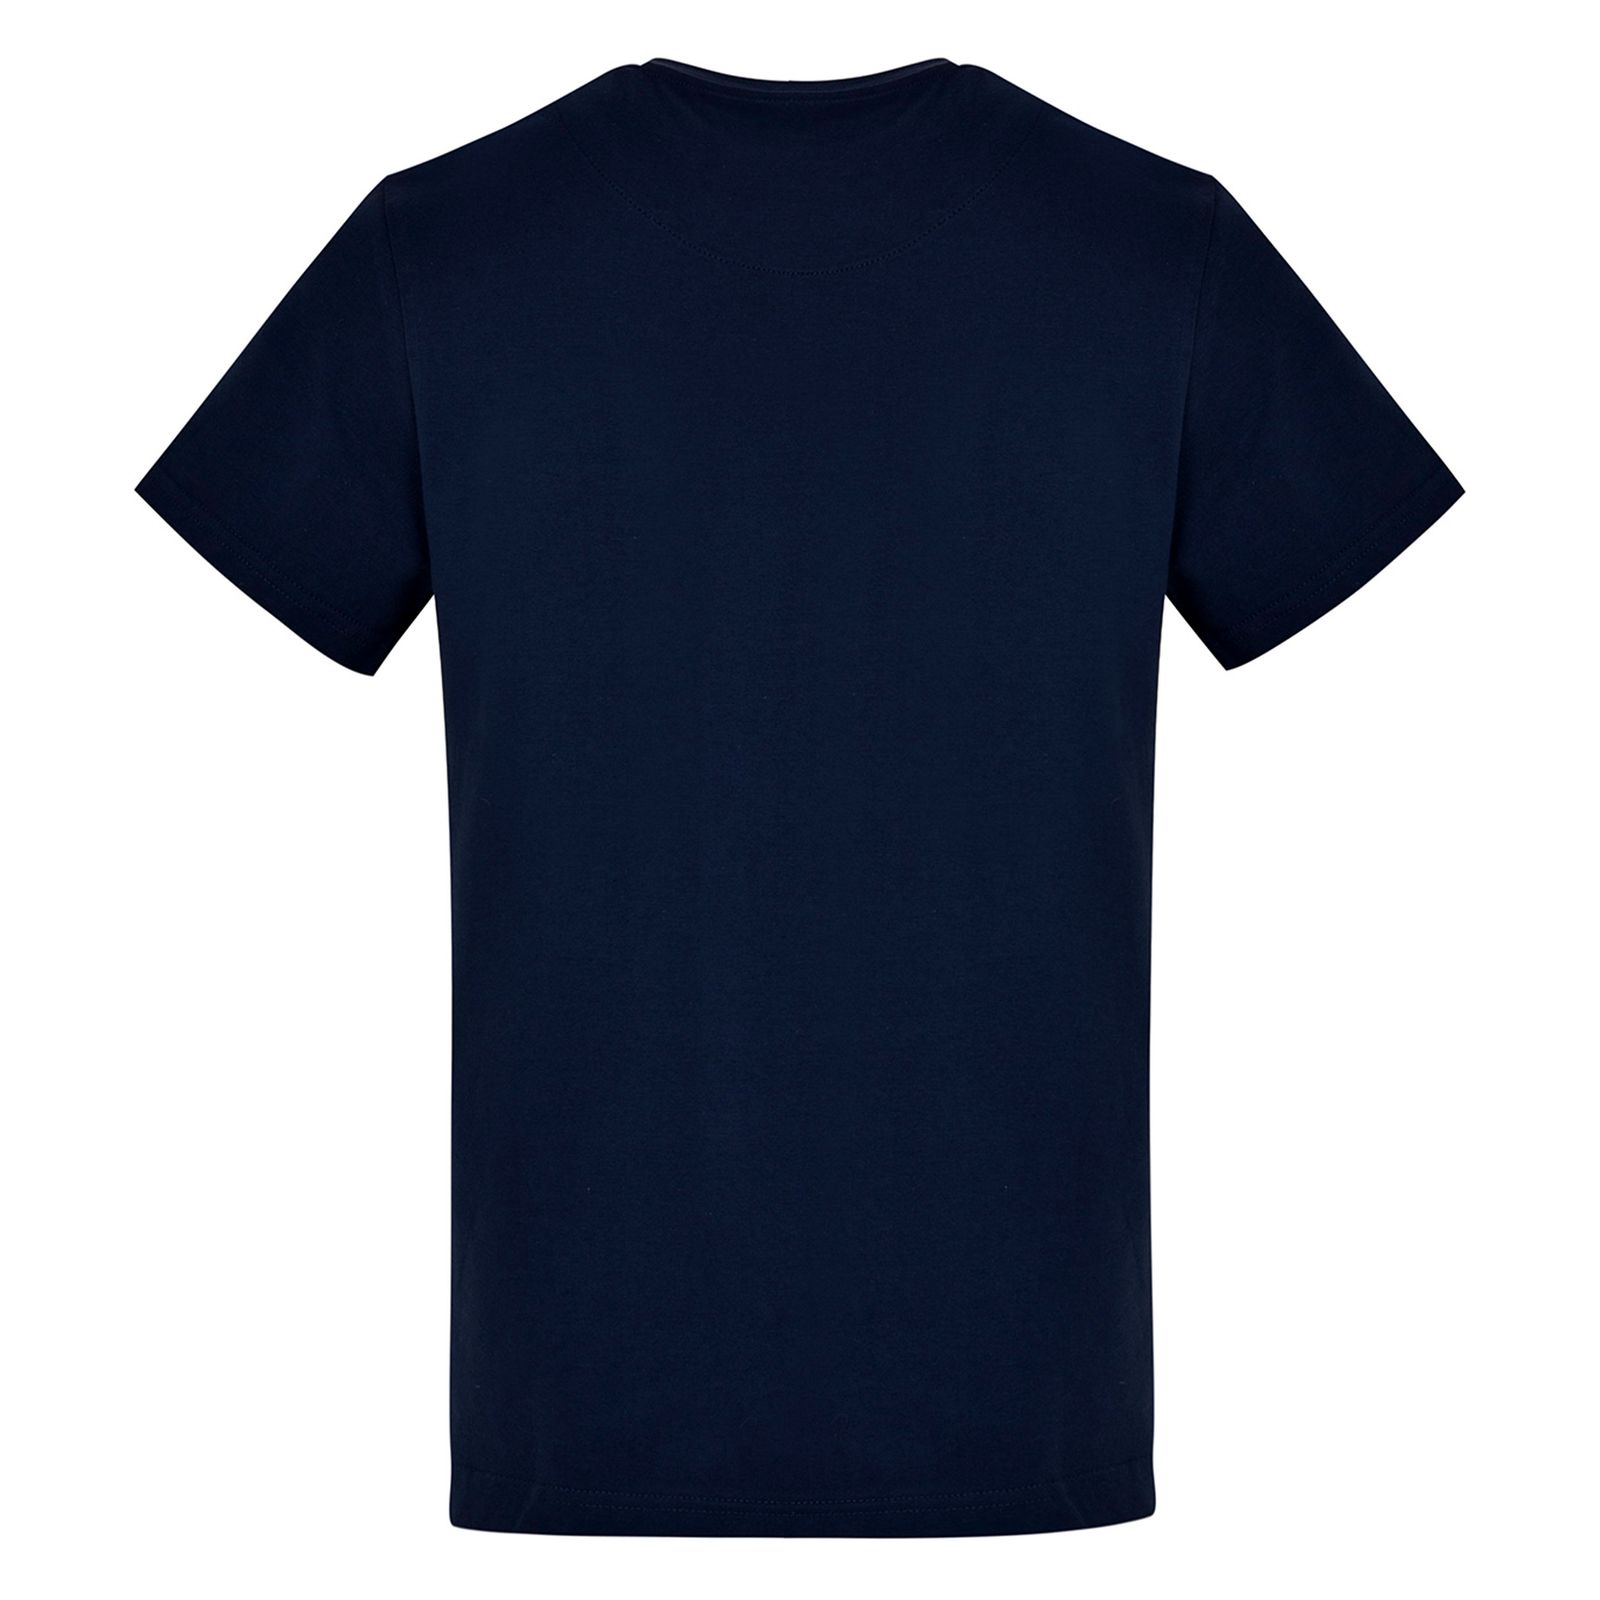 تی شرت آستین کوتاه مردانه بادی اسپینر مدل 3453 کد 2 رنگ سرمه ای -  - 3